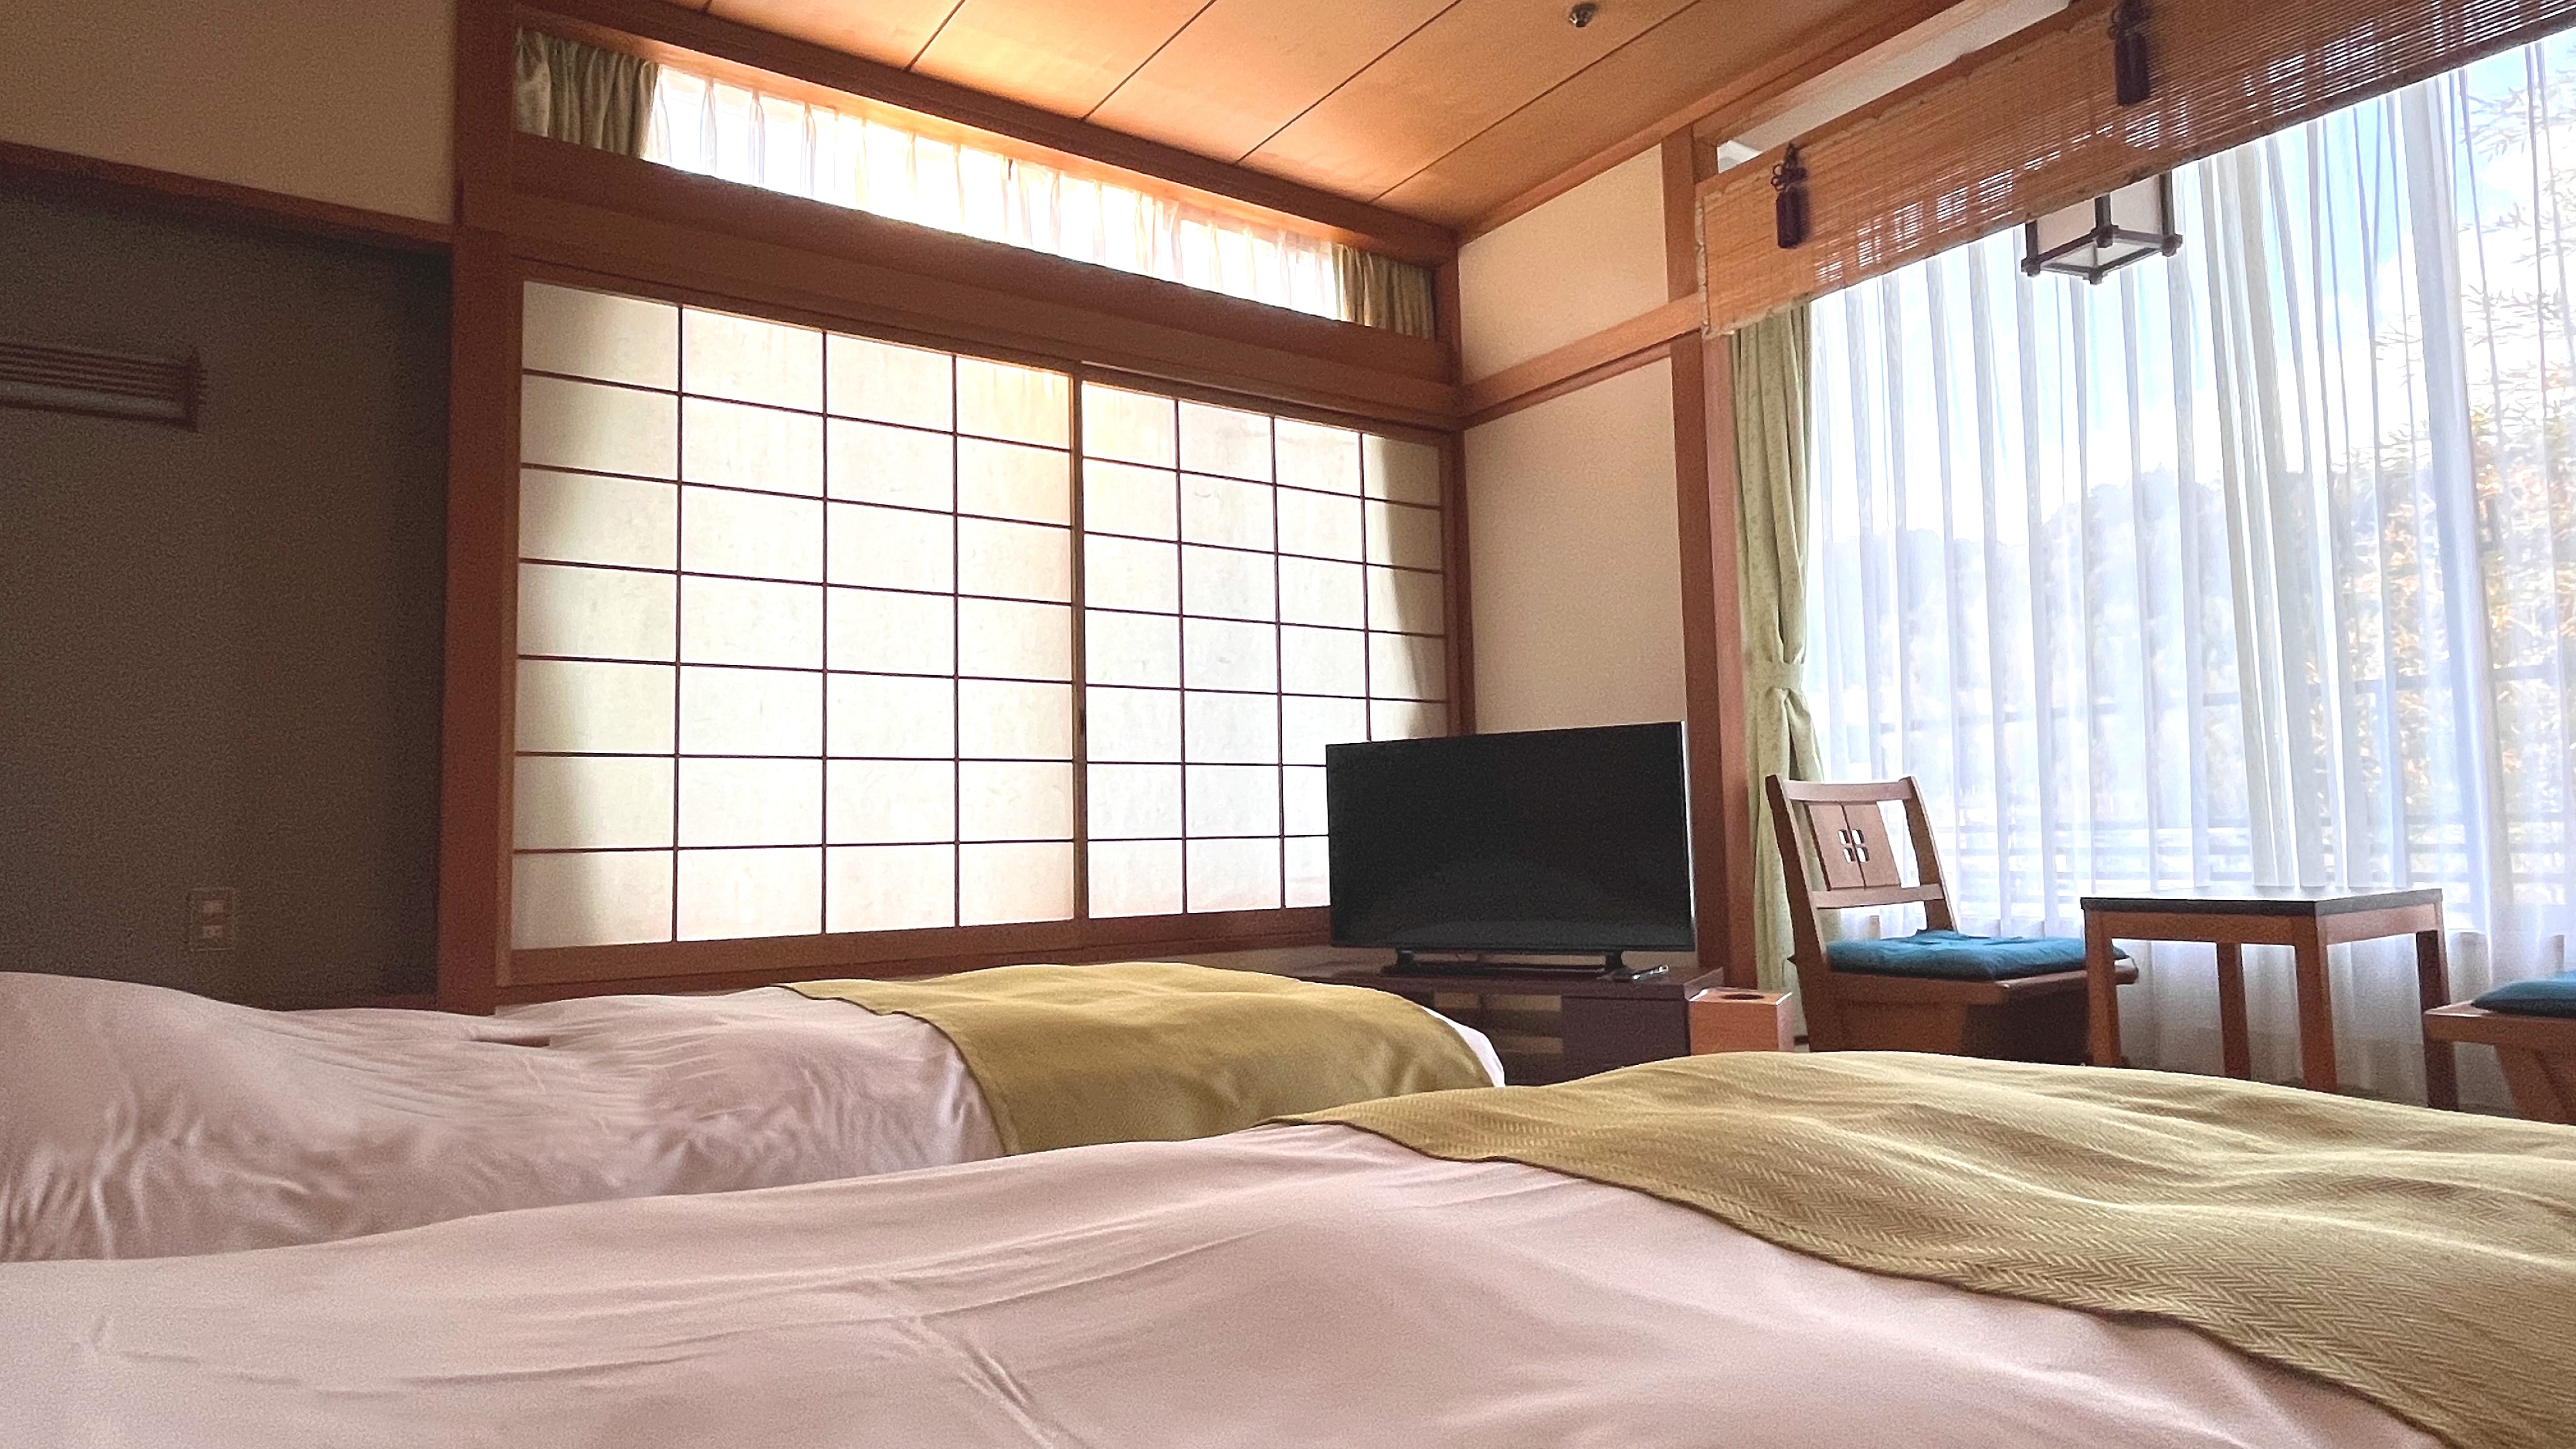 [Kamar bergaya Jepang 10 tikar tatami (2-4 orang)] Tempat tidur yang fungsional dan mudah digunakan ditata dalam suasana gaya Jepang.